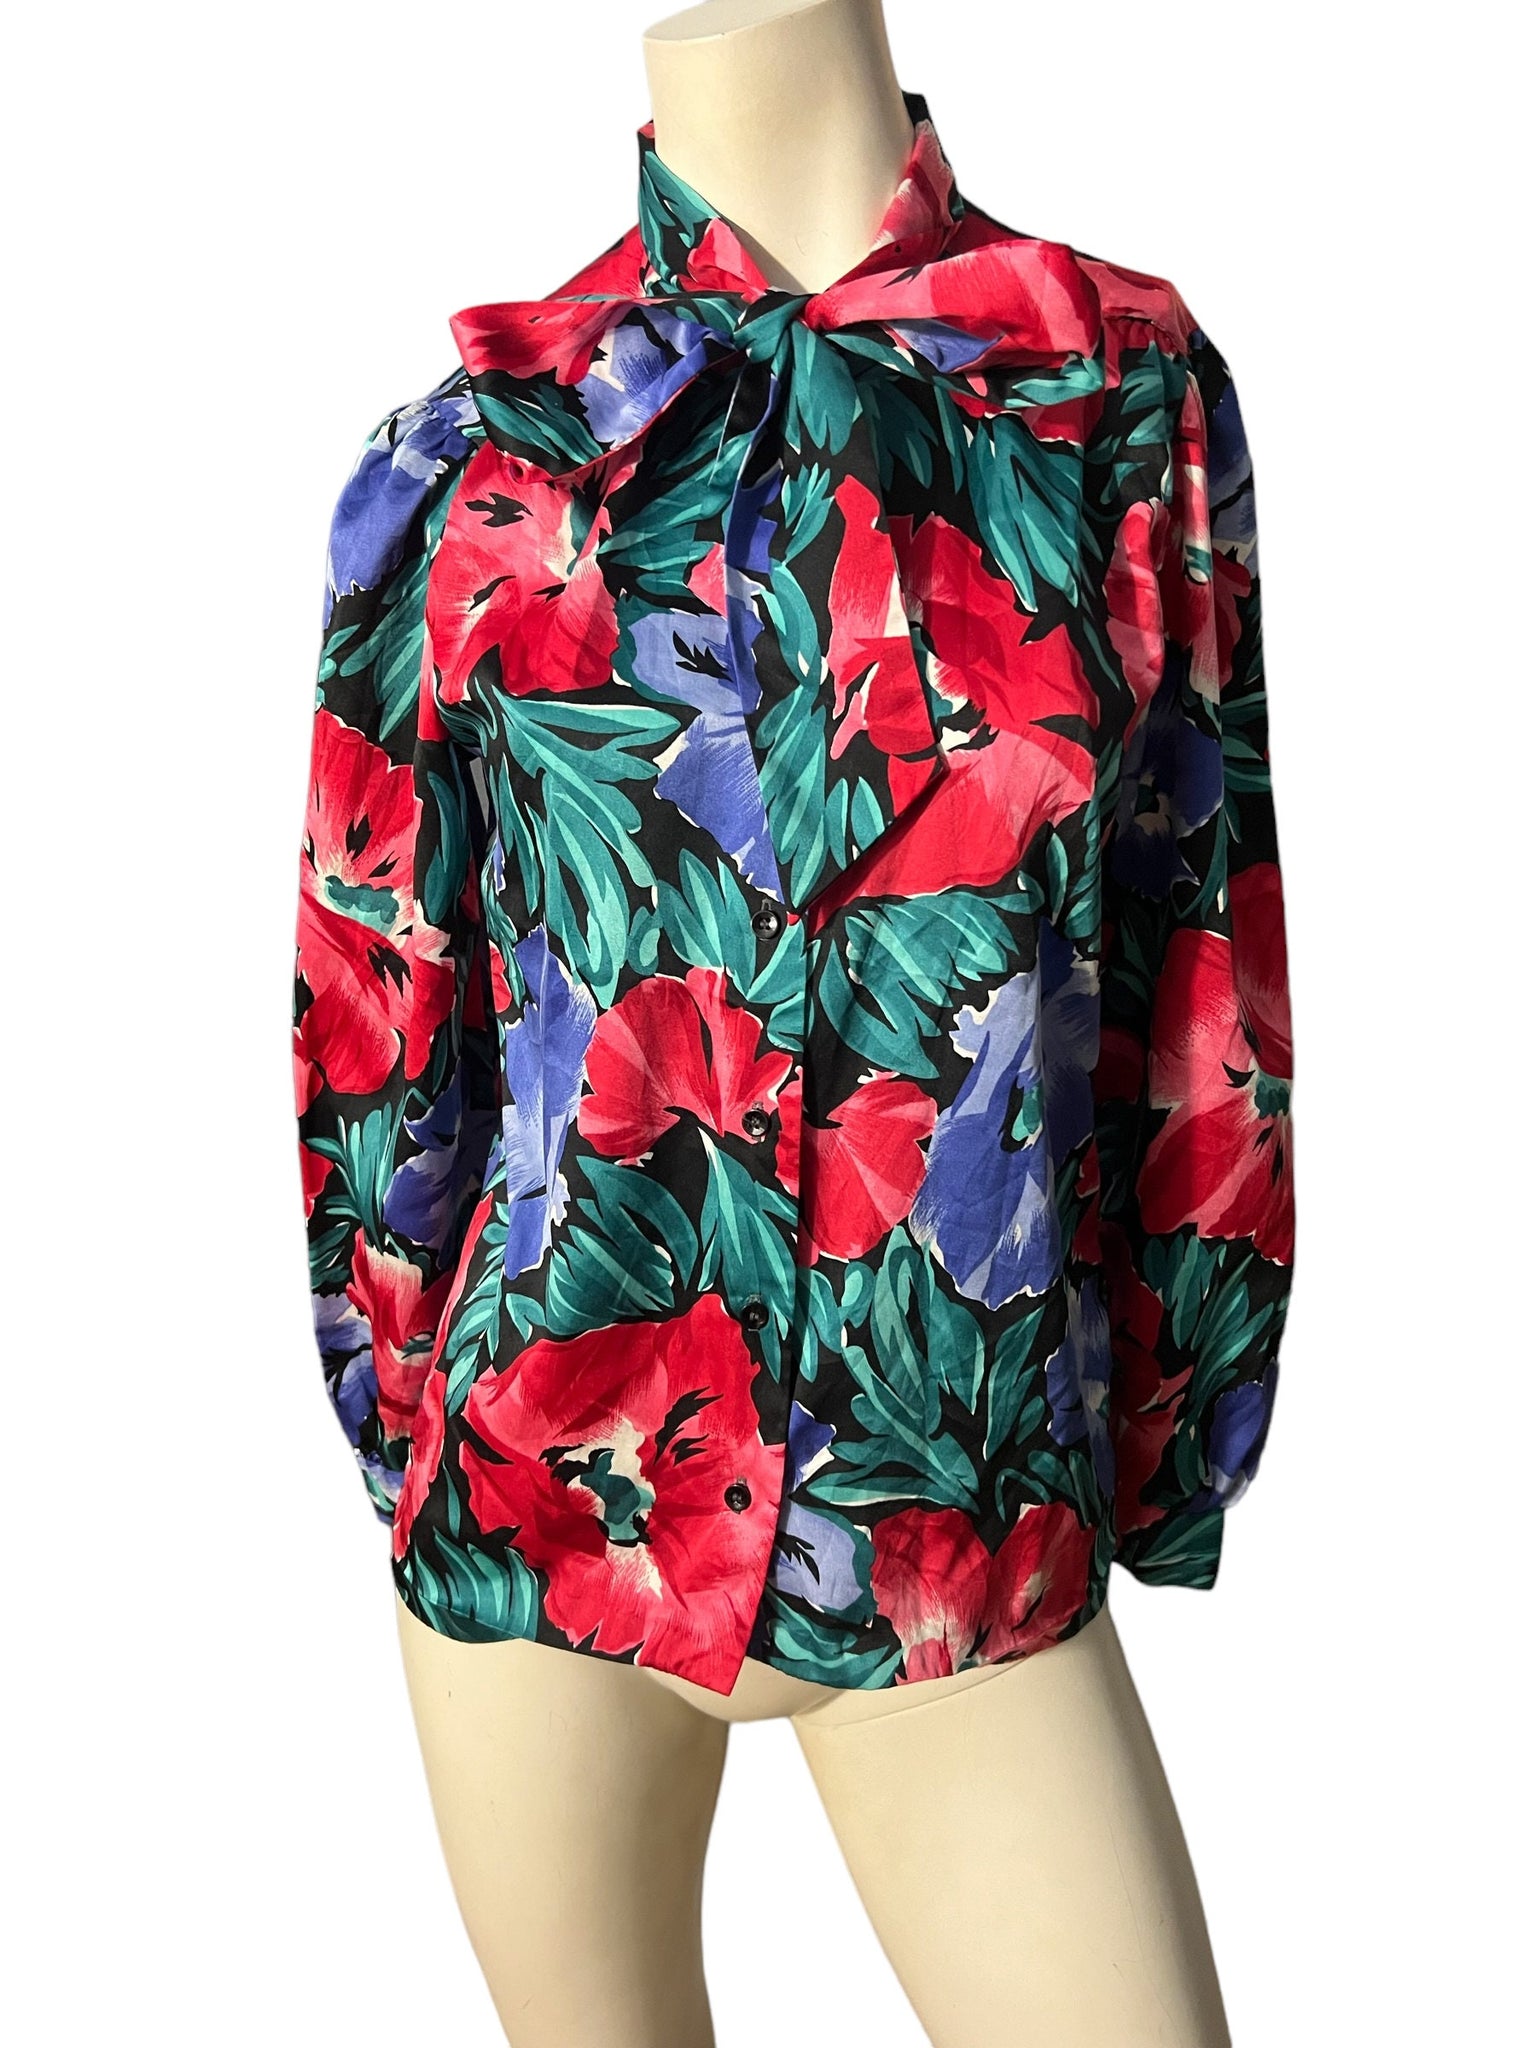 Vintage 80's floral bow tie blouse top S M rrrrruss